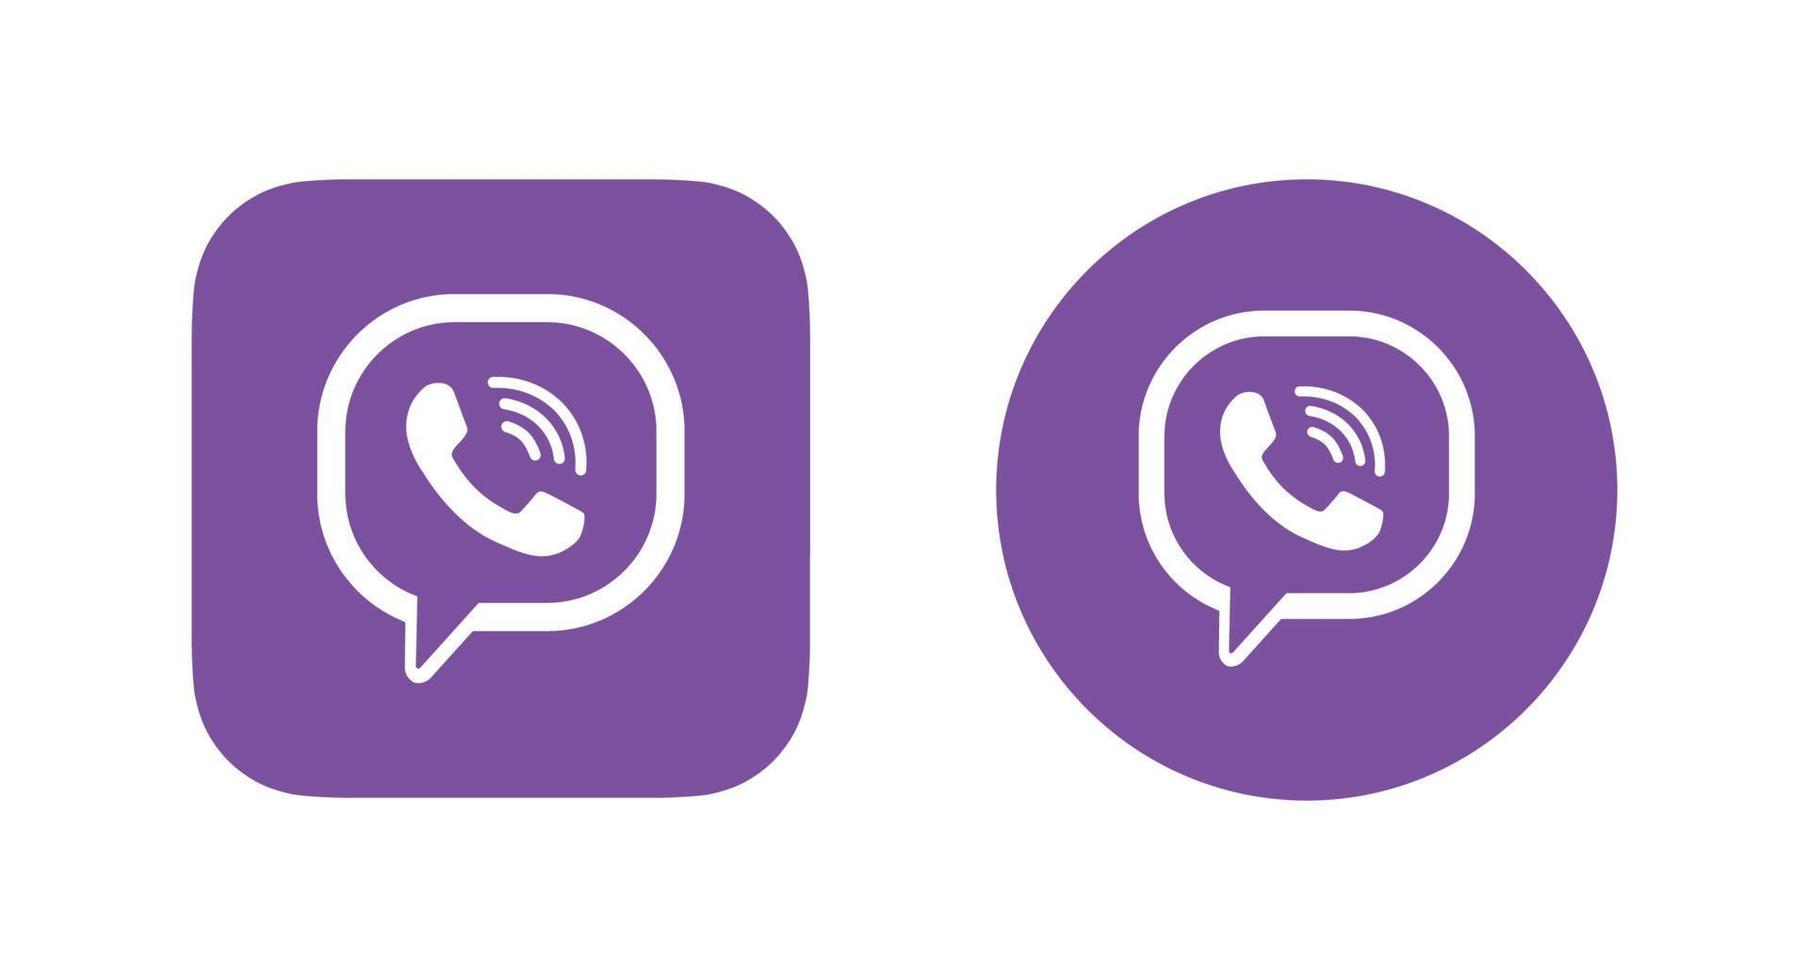 logotipo do aplicativo viber, logotipo do viber, vetor grátis de ícone do viber